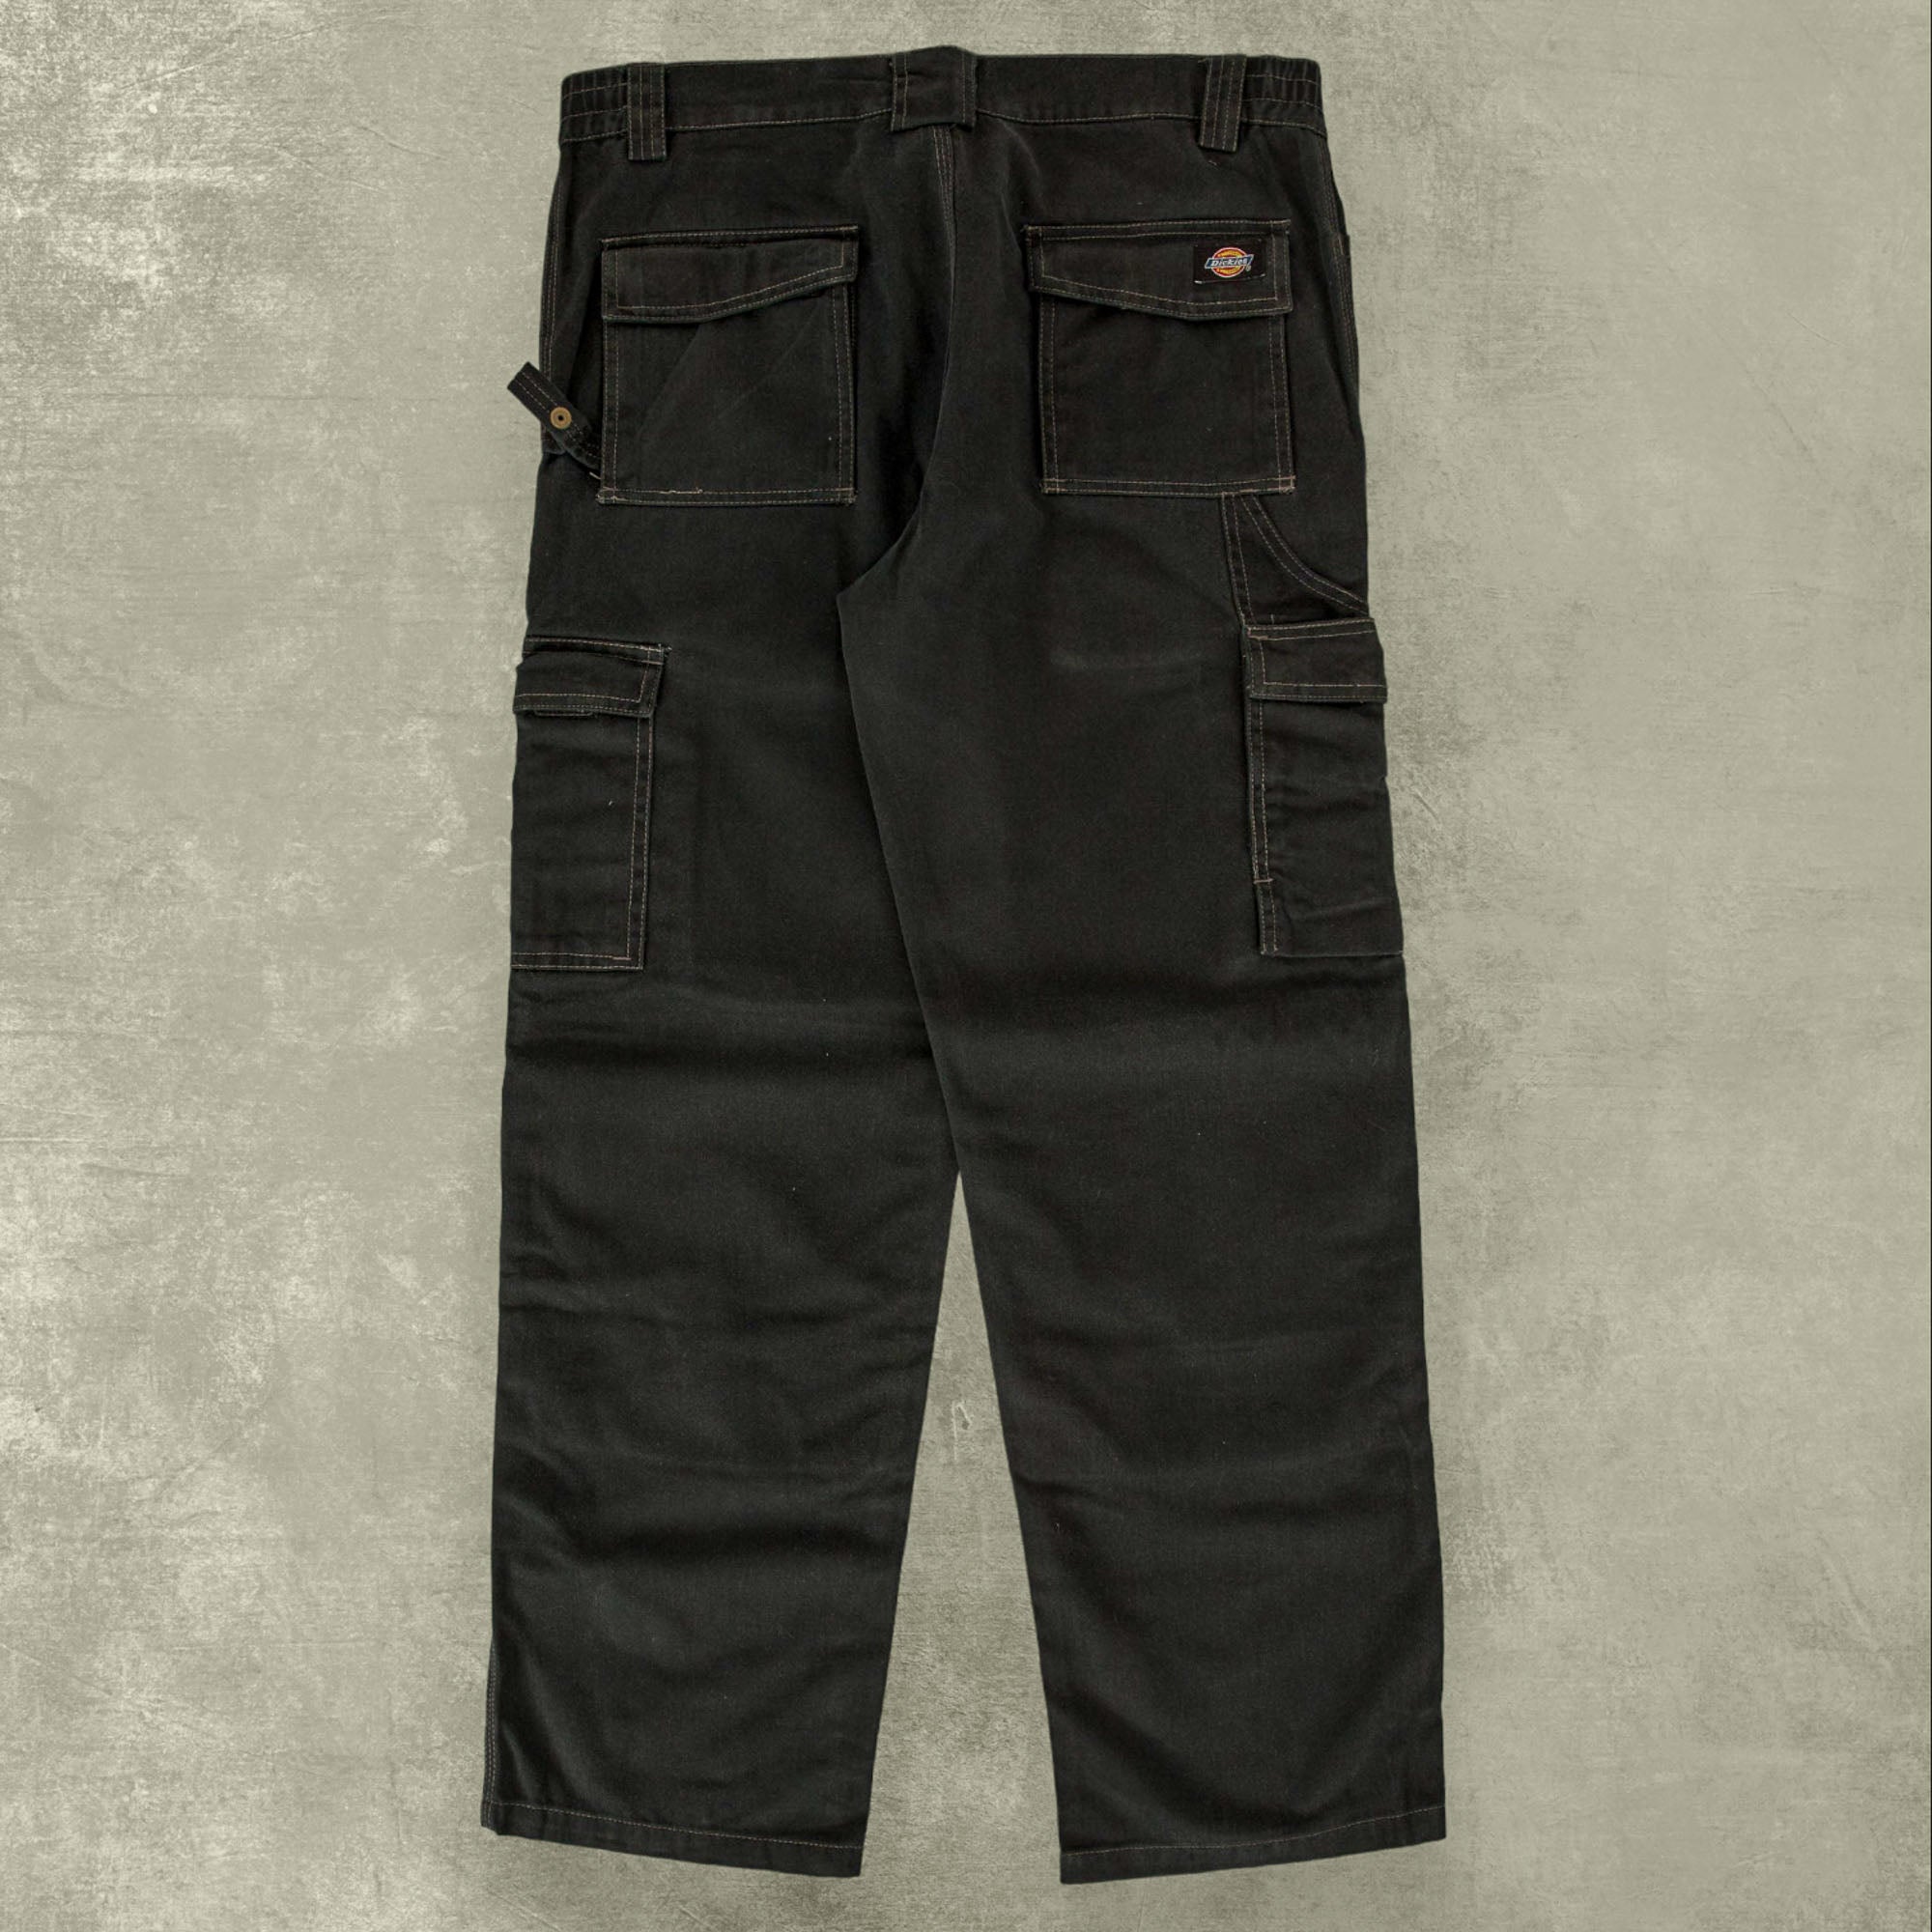 SUMARI Utility Trousers-Washed Black